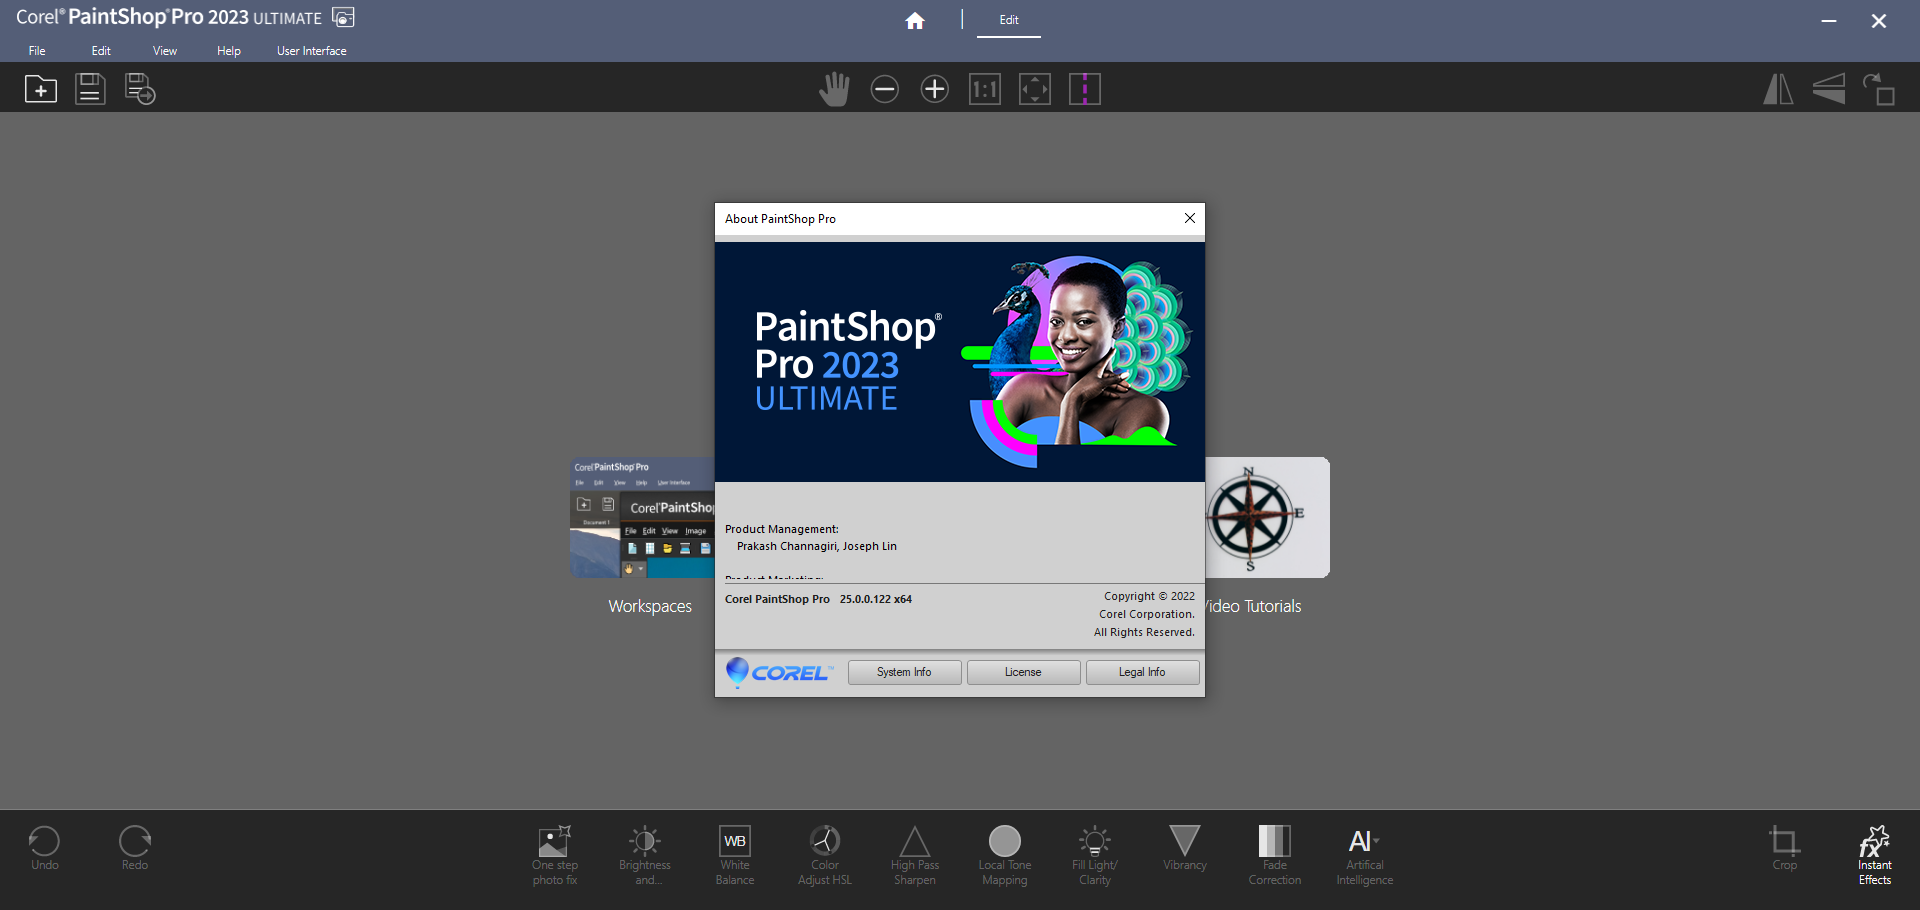 Corel Paintshop 2023 Pro Ultimate 25.2.0.58 download the new for mac